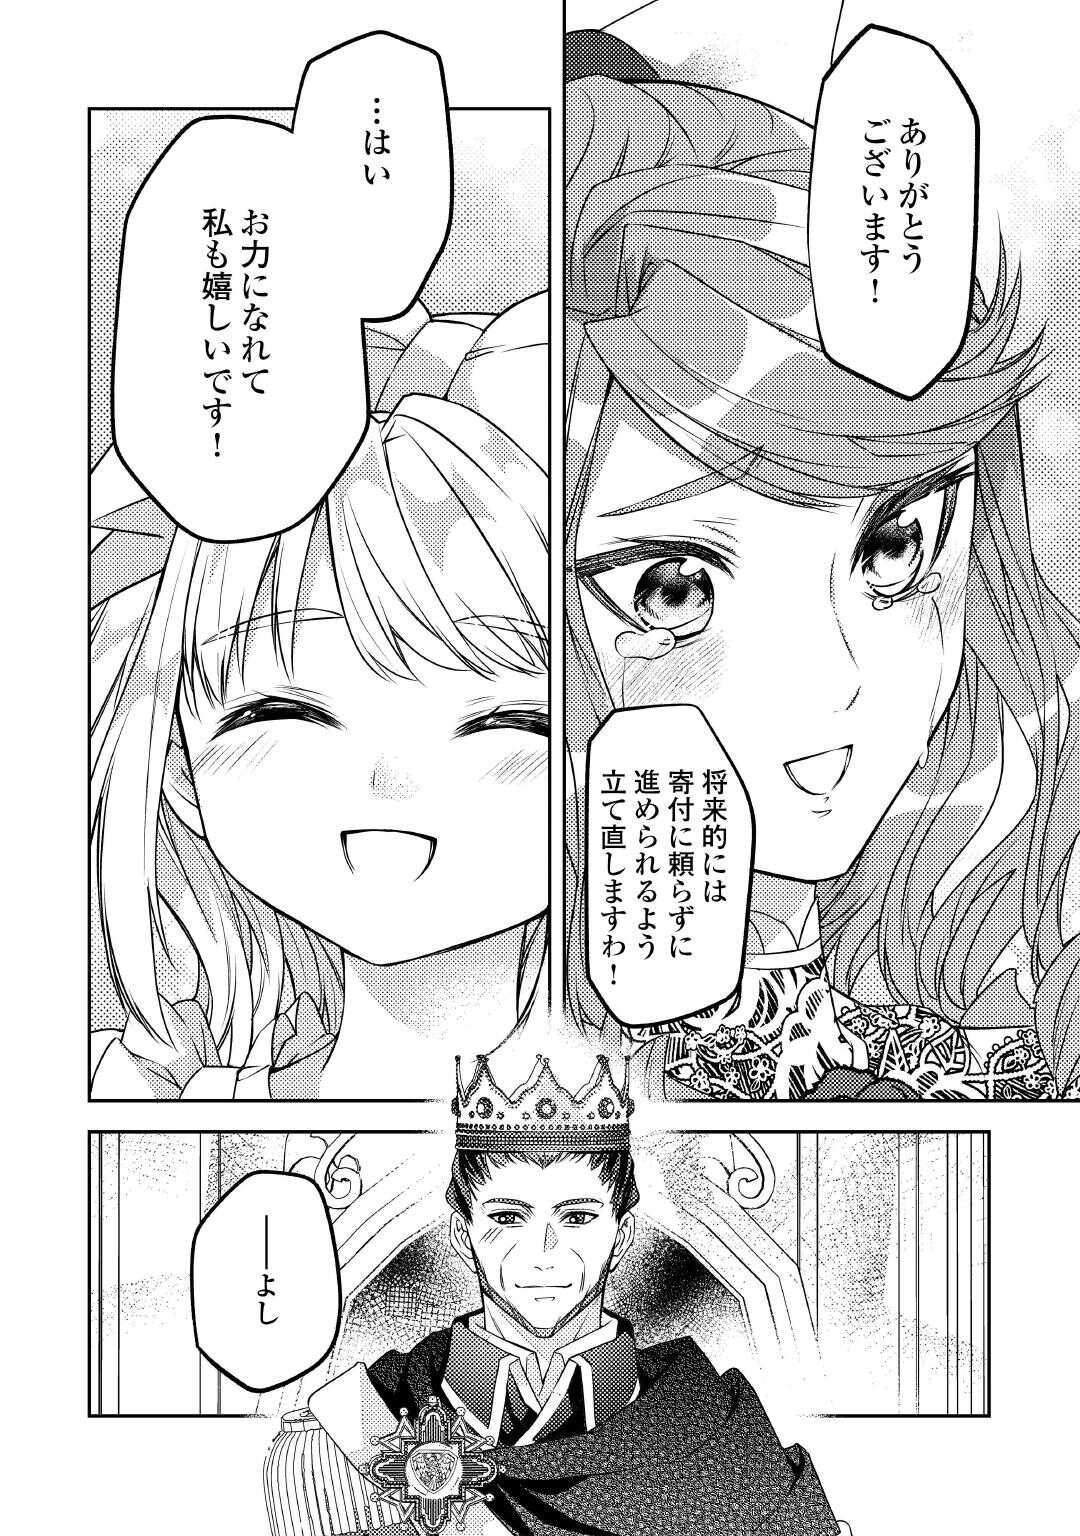 Toaru Chisana Mura No Chi Tona Tanya Ya San - Chapter 20 - Page 6